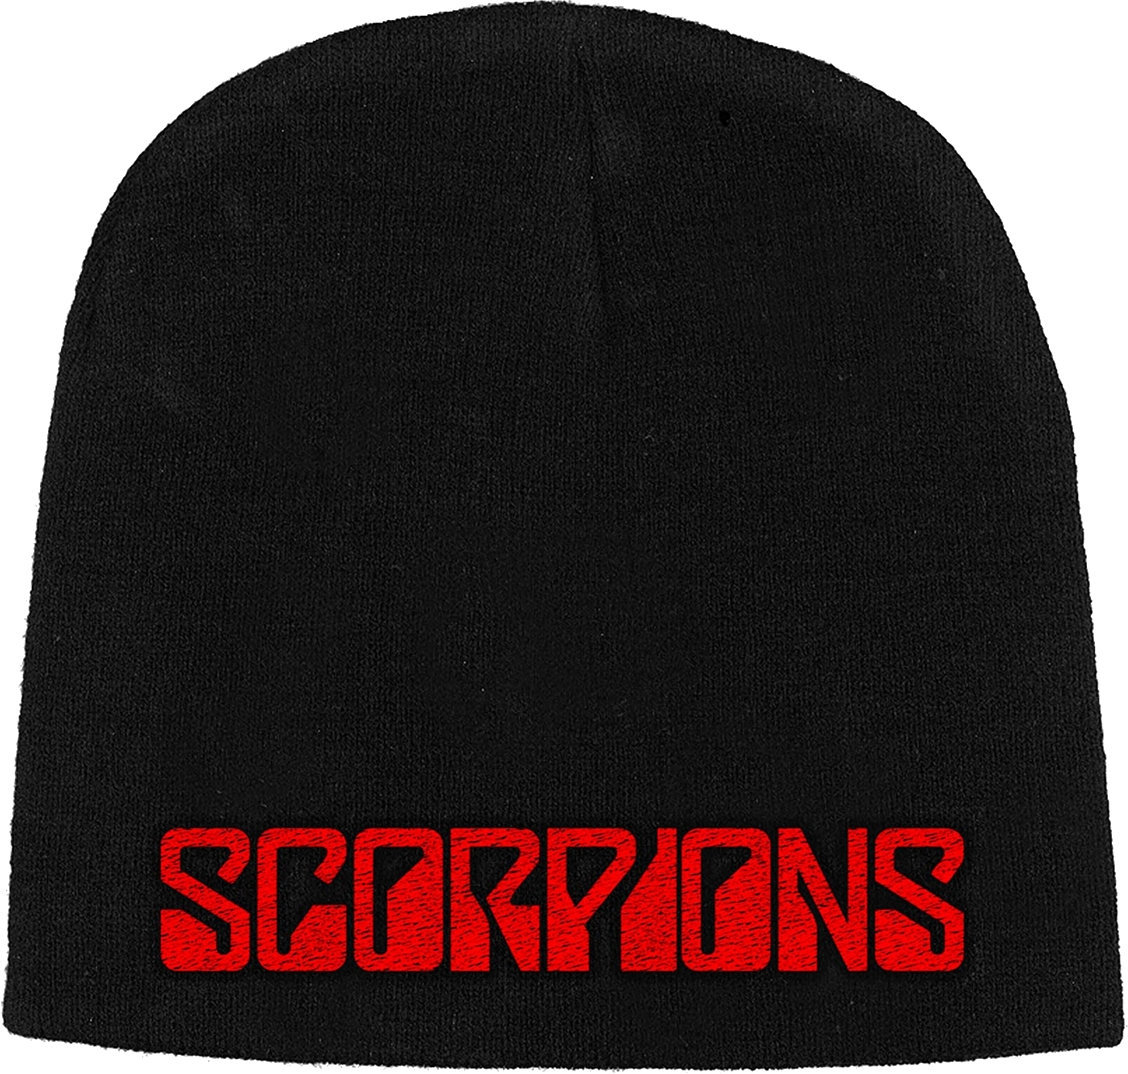 Čepice Scorpions Čepice Logo Černá